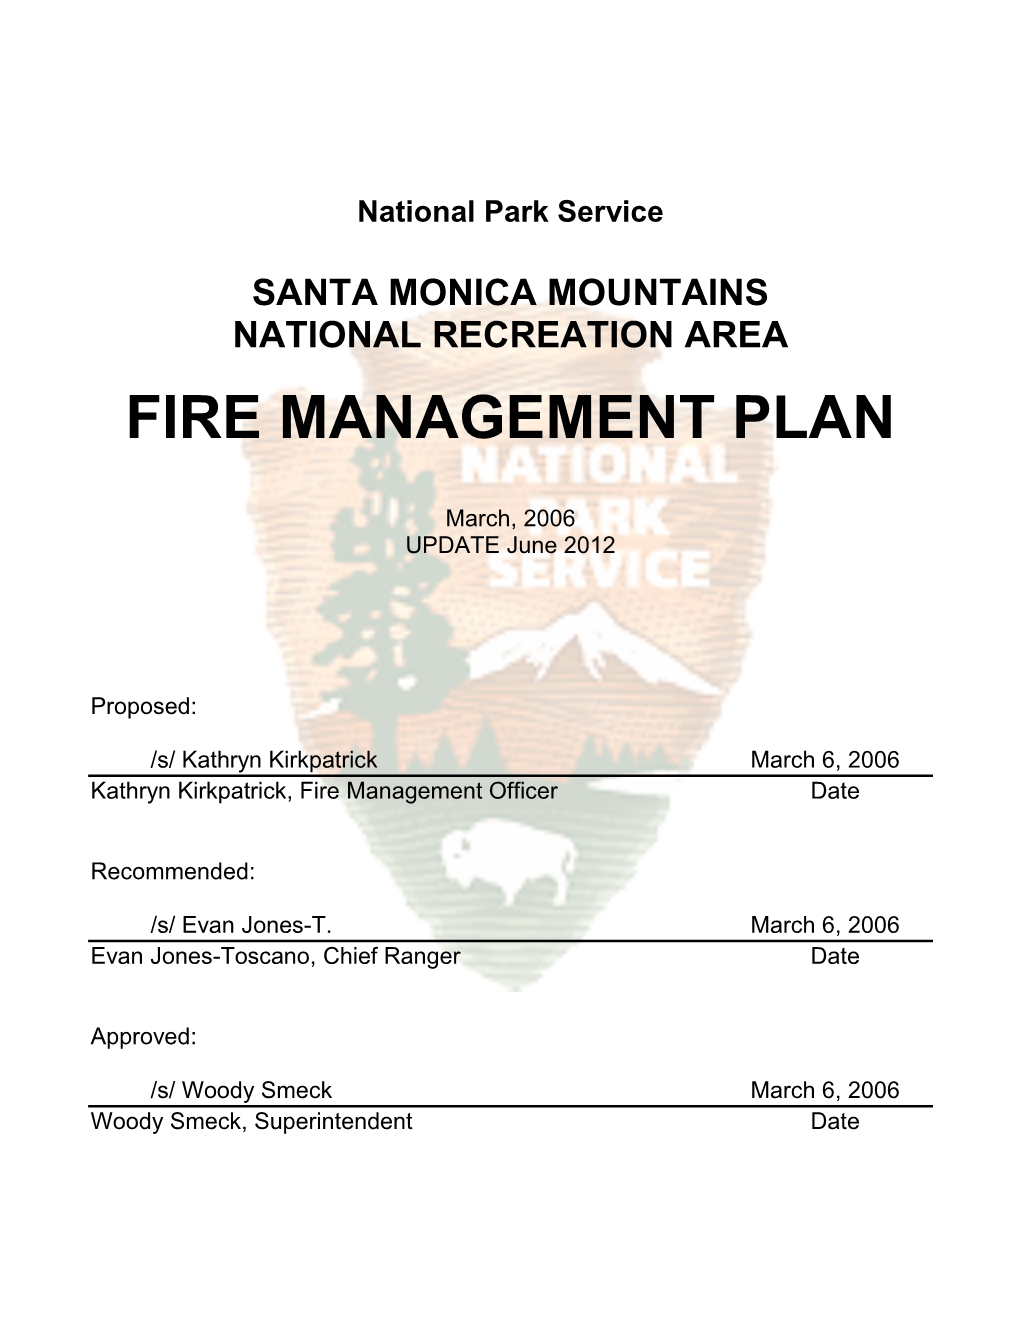 Fire Management Plan